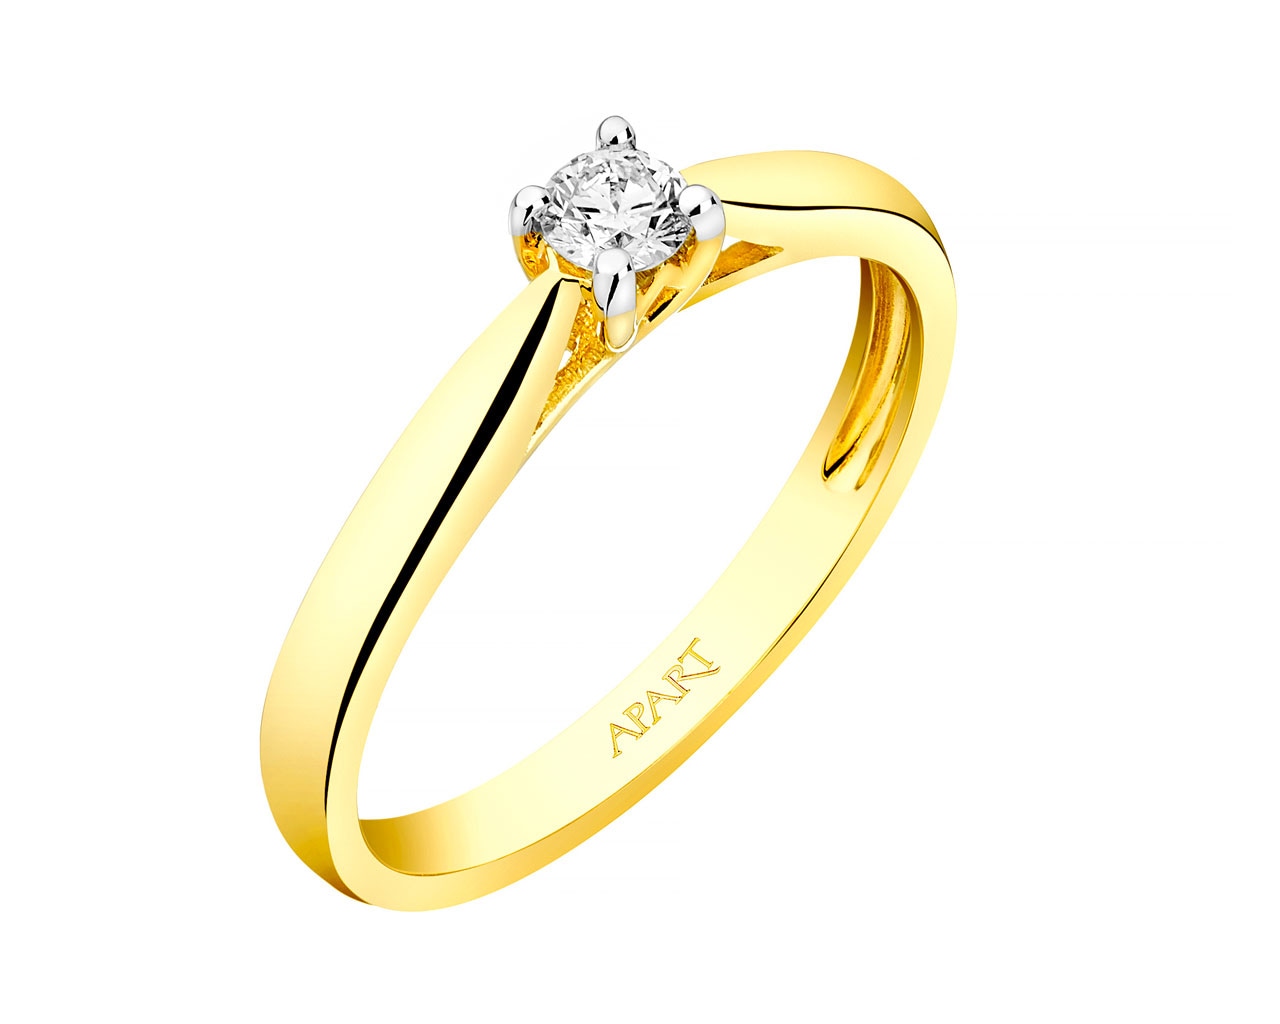 Prsten ze žlutého zlata s briliantem 0,10 ct - ryzost 585